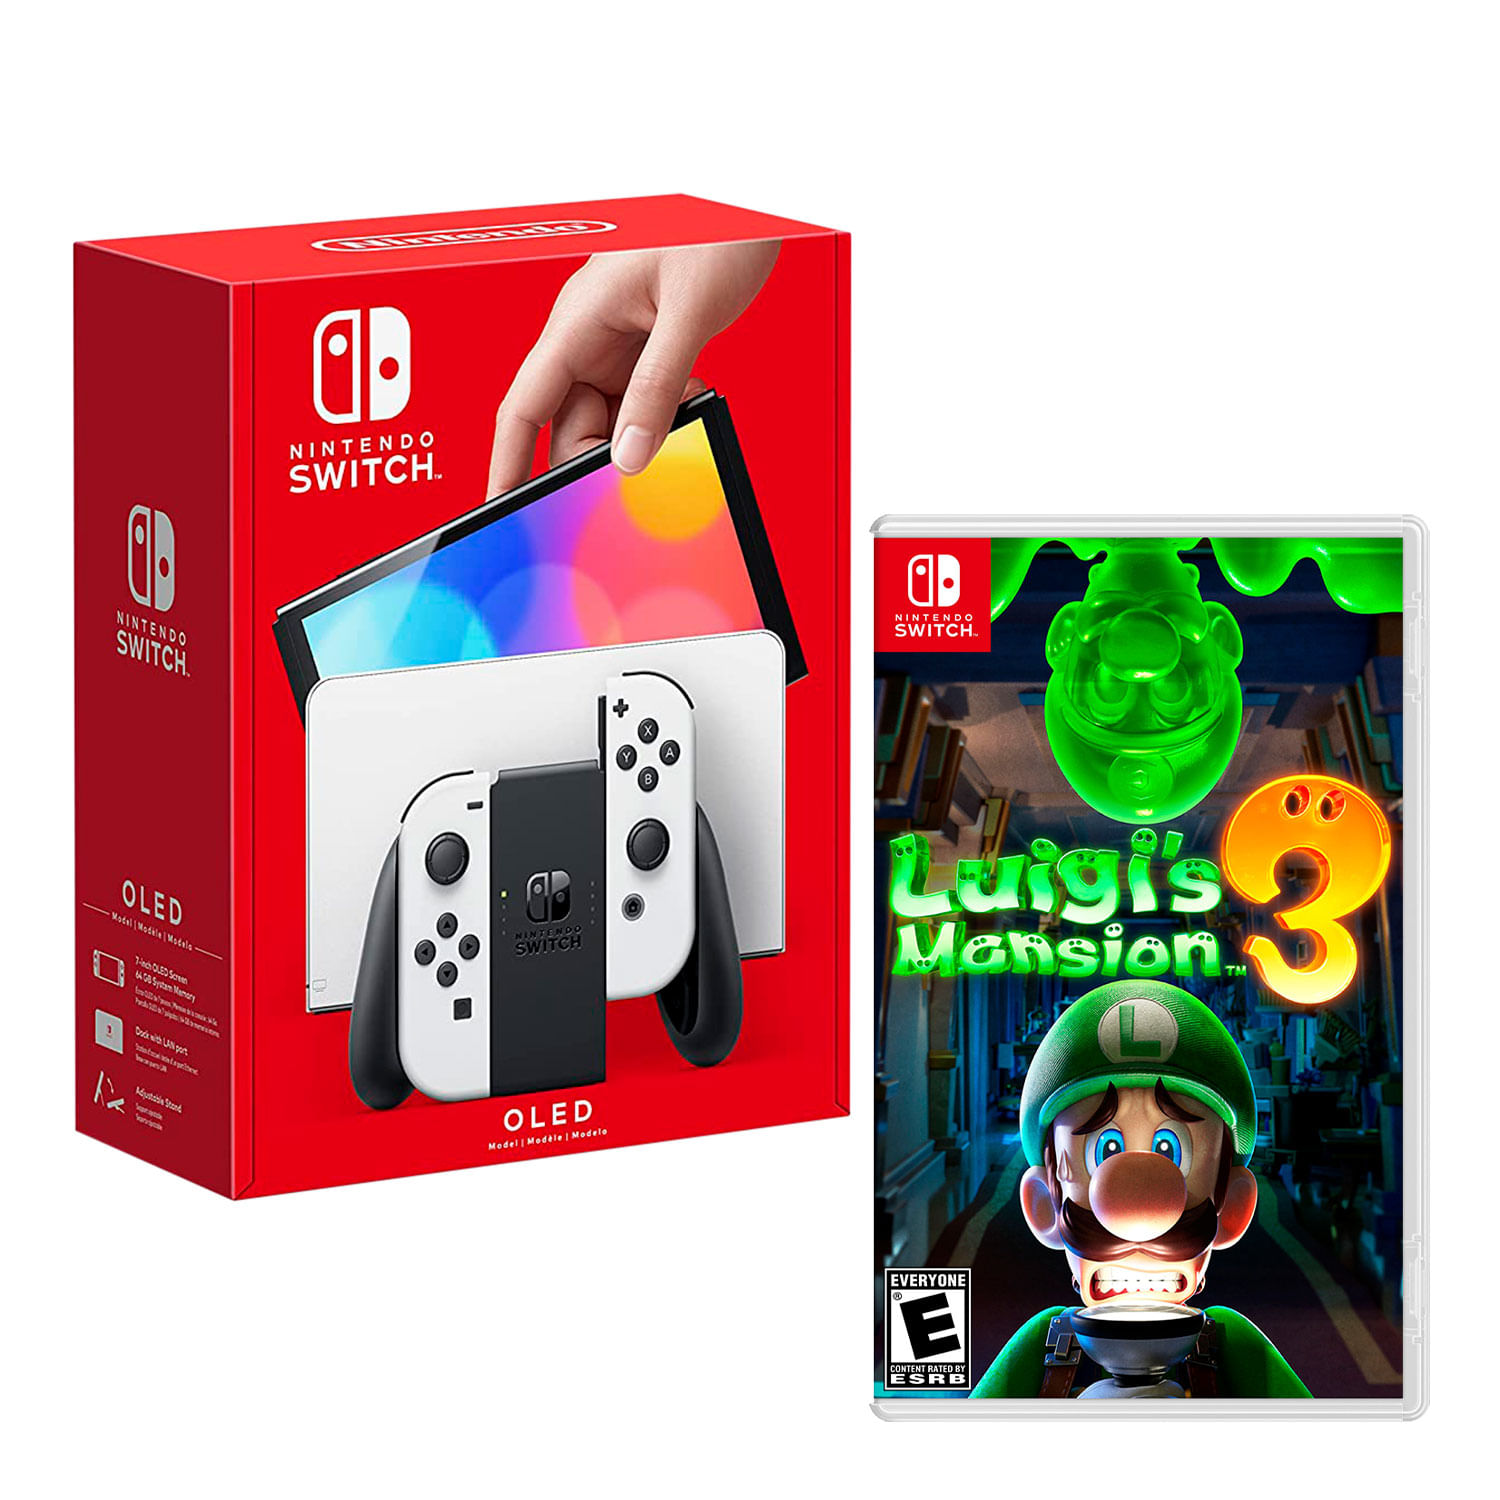 Consola Nintendo Switch Modelo Oled Blanco + Luigis Mansion 3